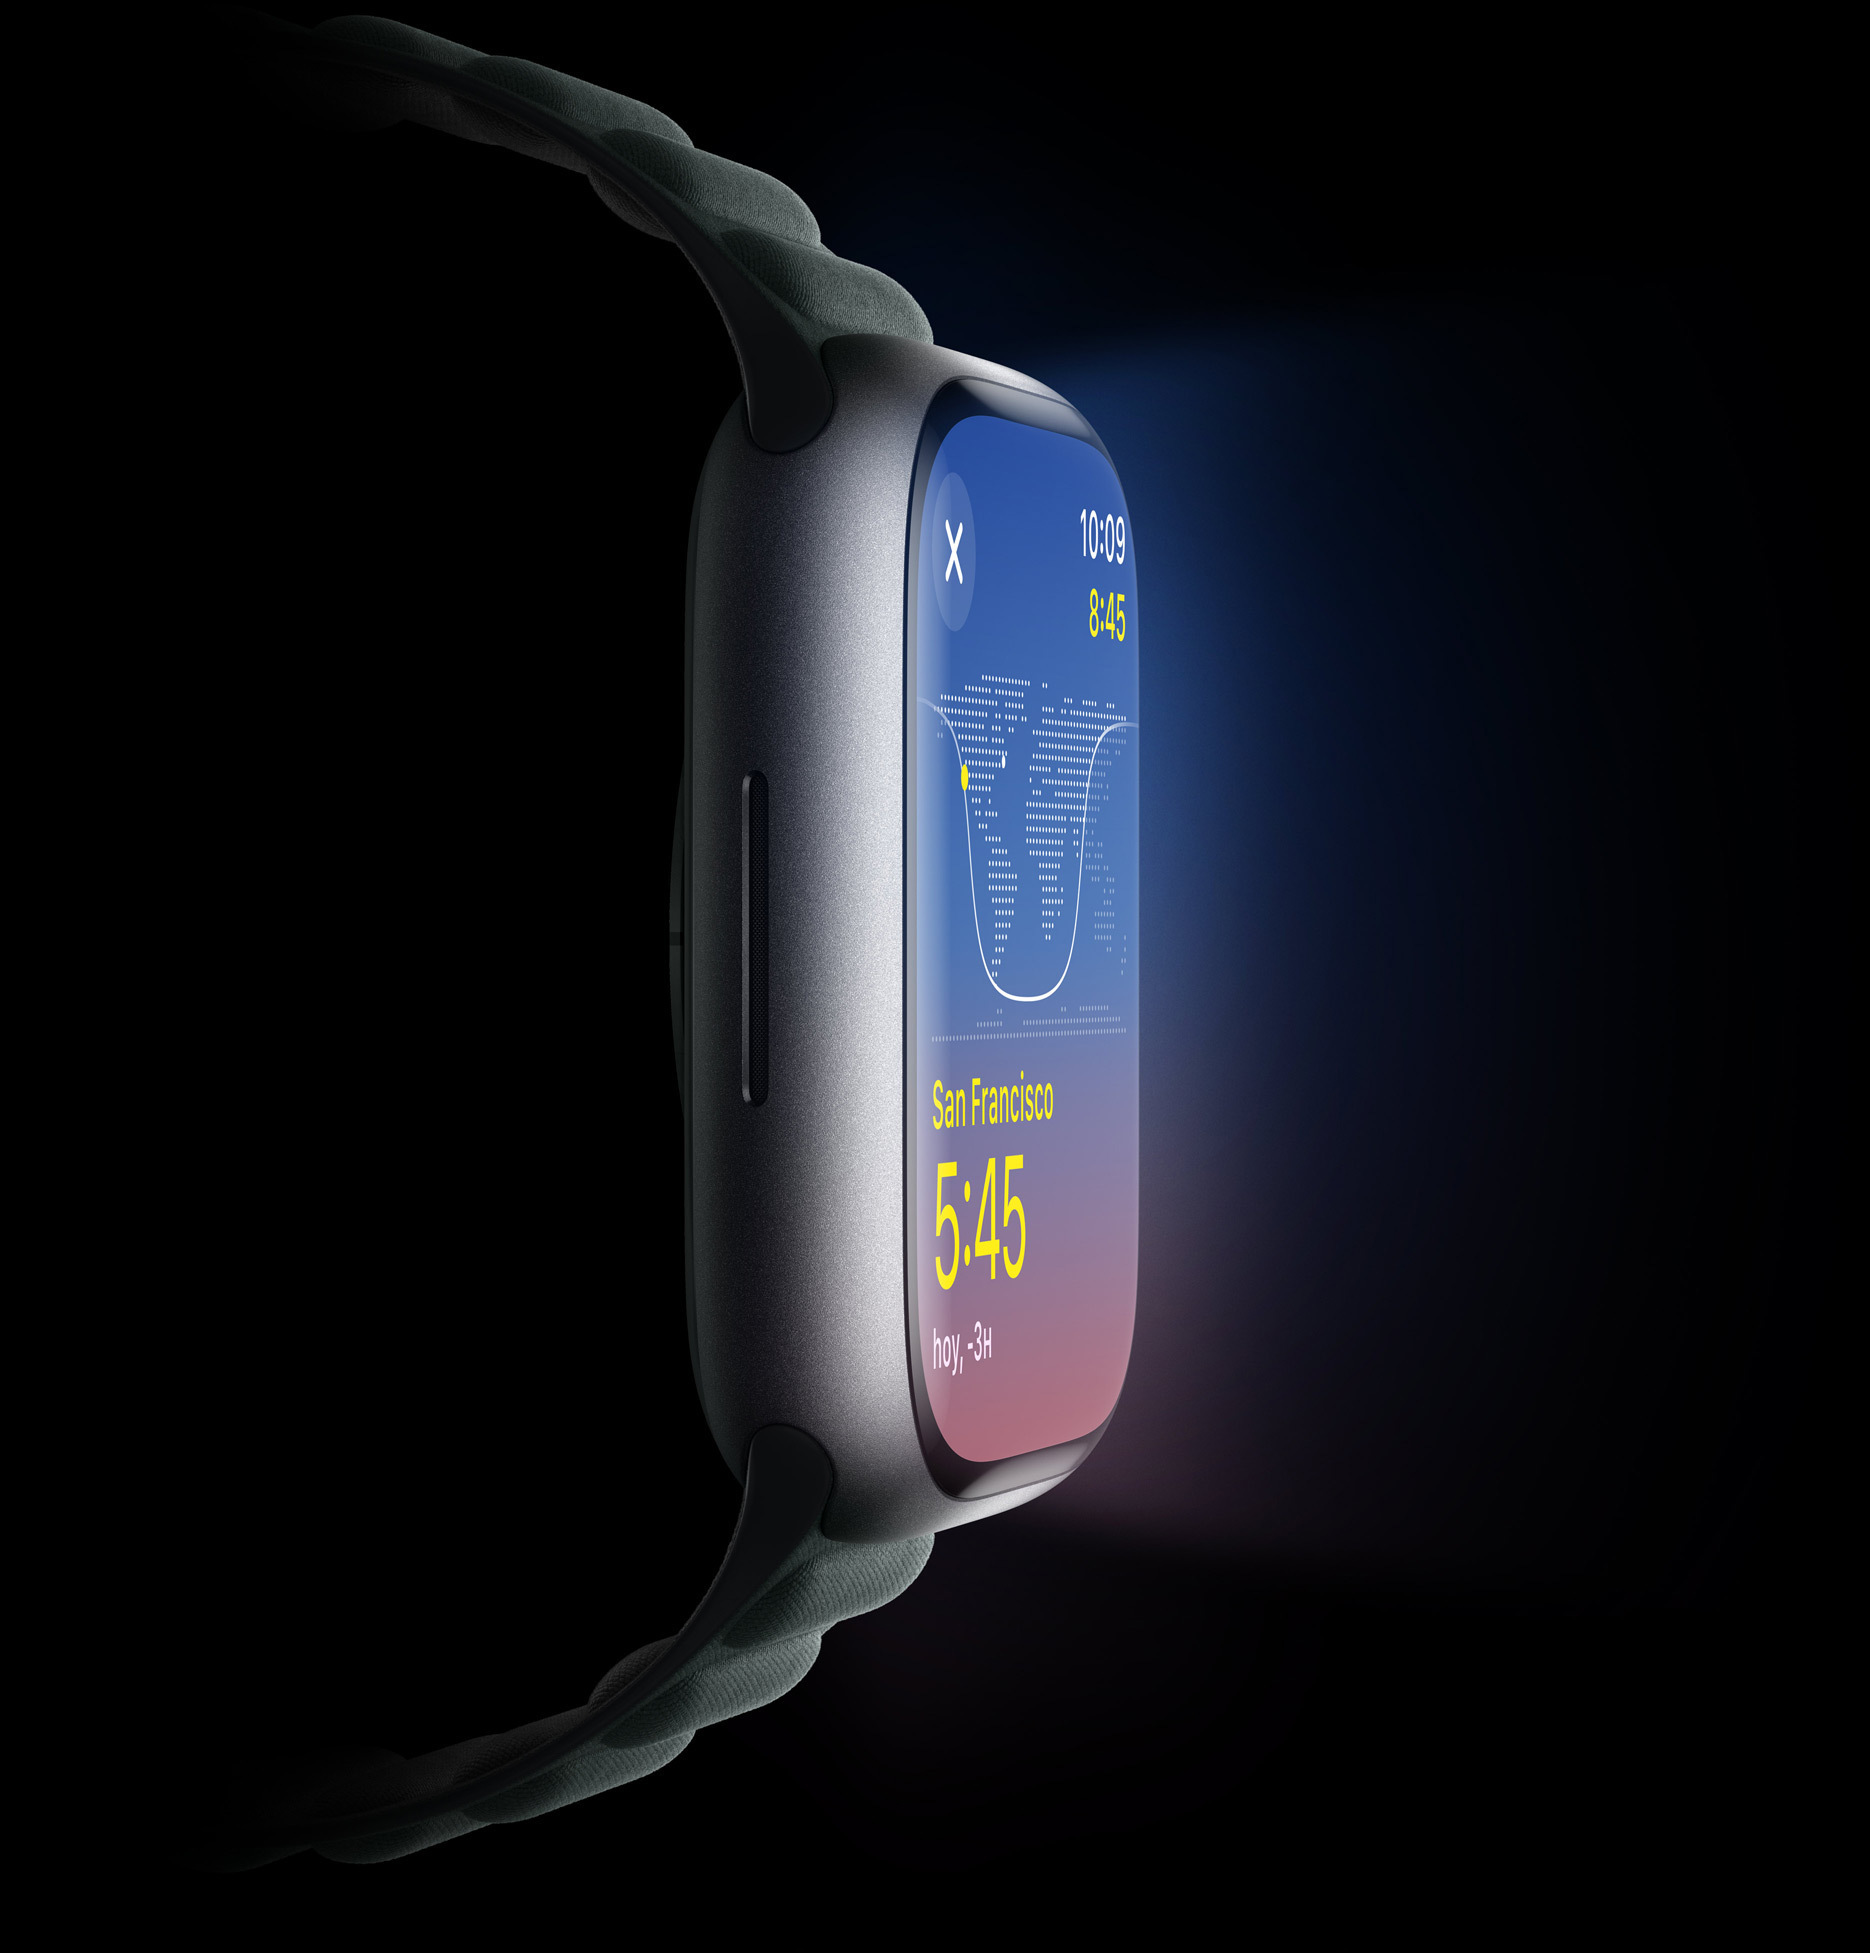 Vista lateral del Apple Watch que muestra el brillo de la pantalla.